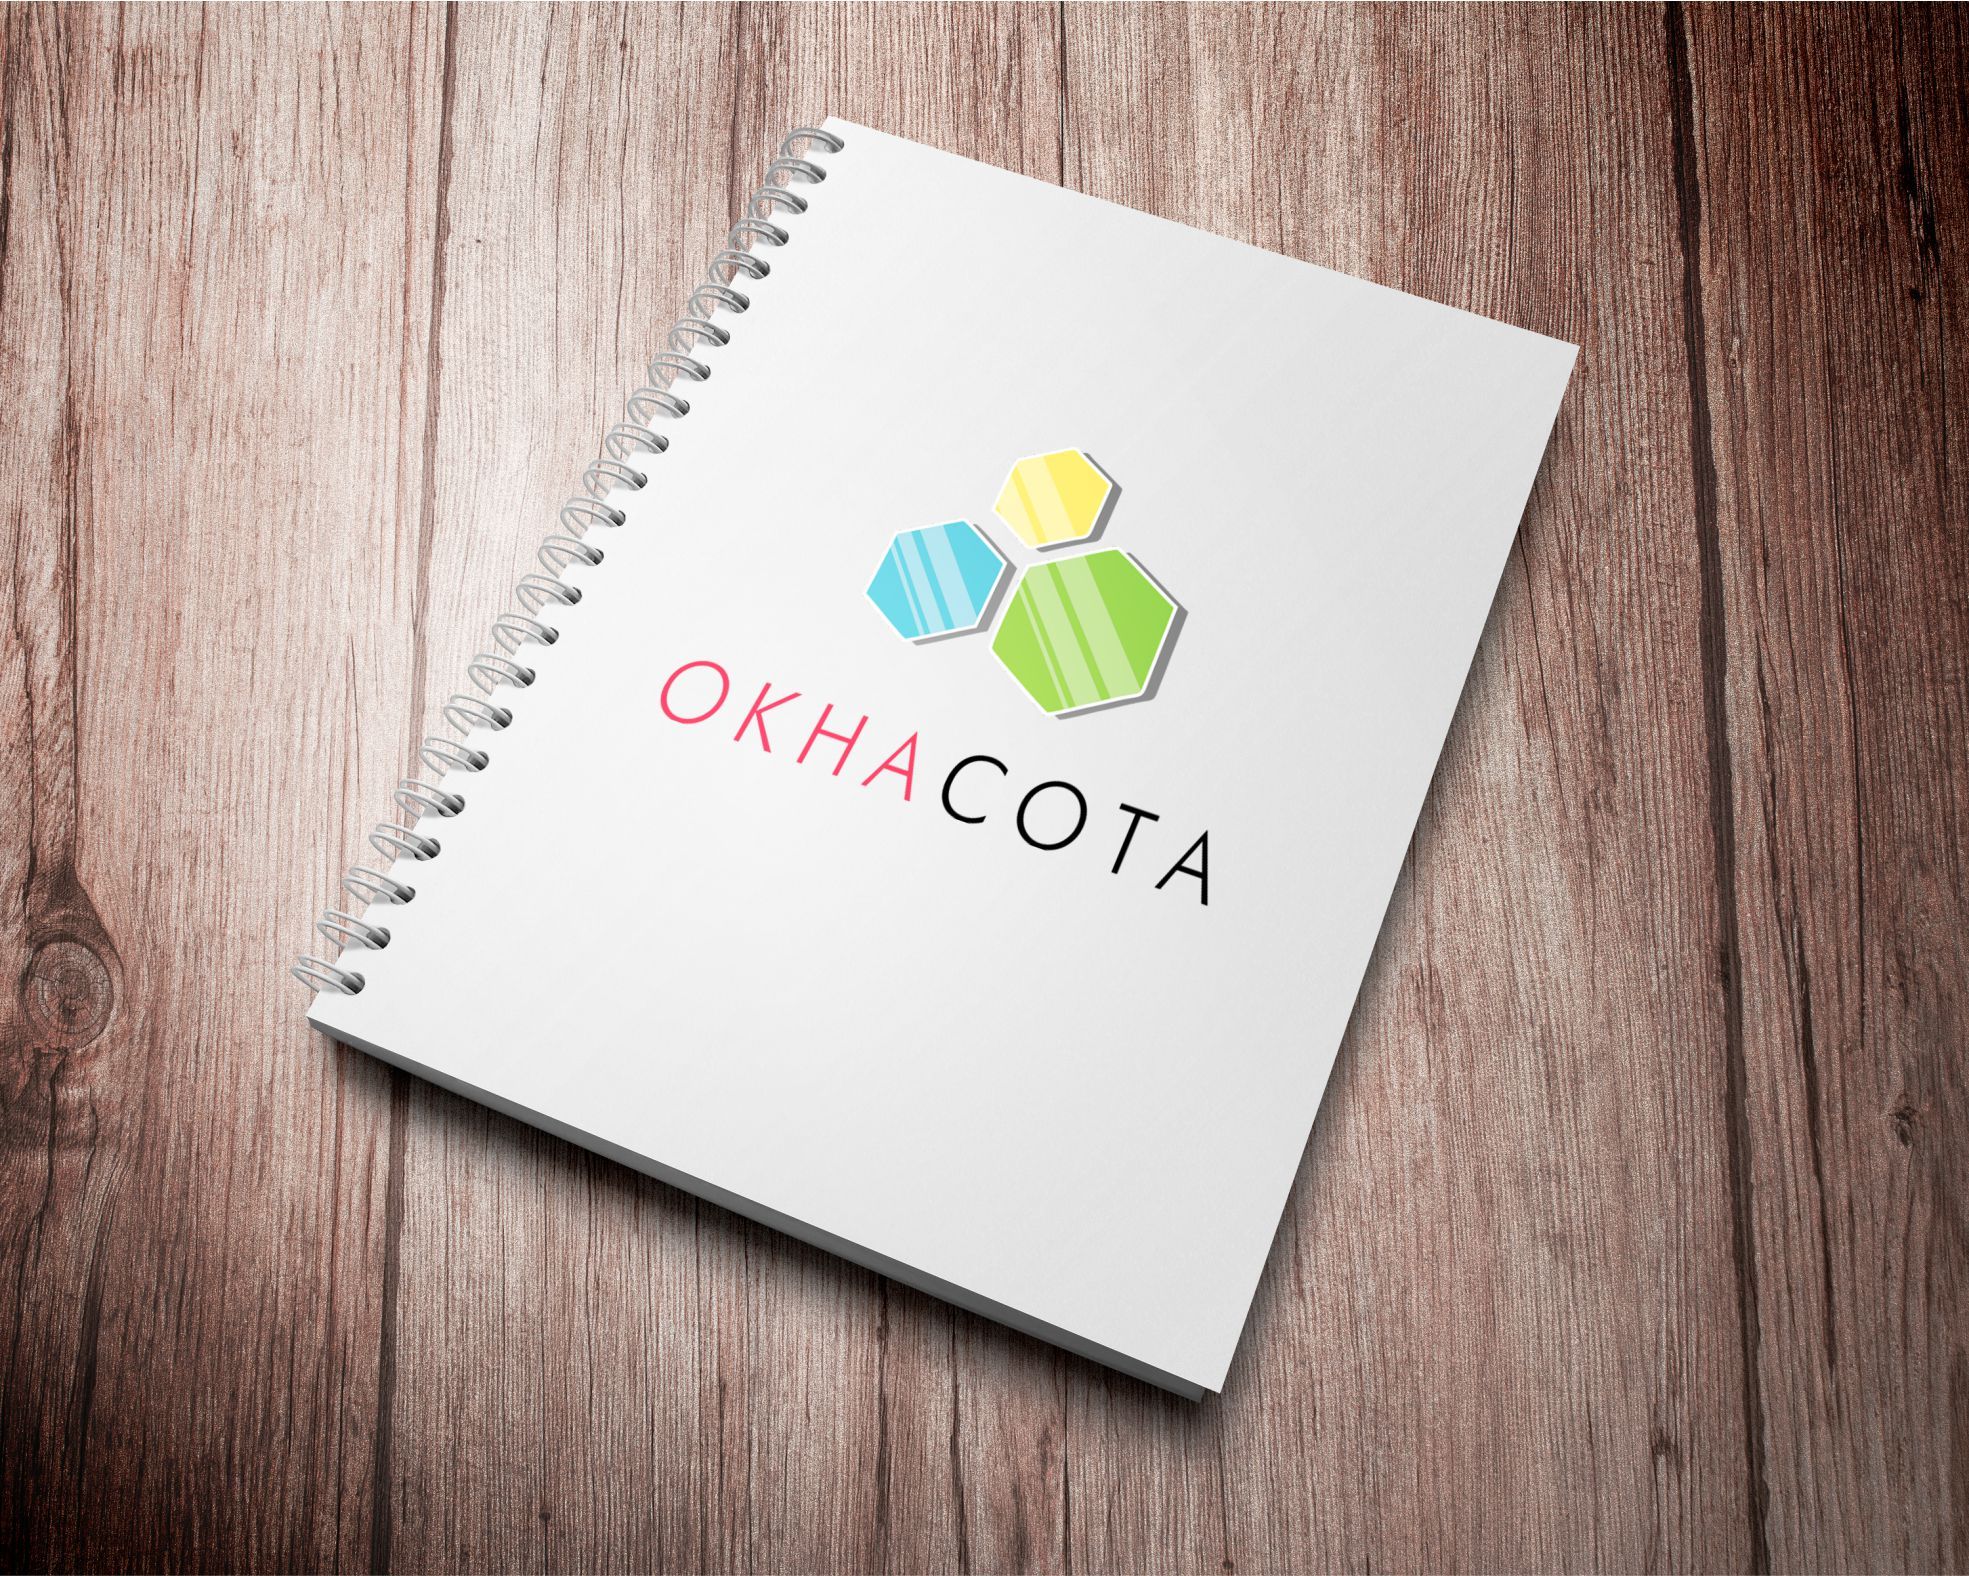 Логотип для ОКНАСОТА - дизайнер SkankA